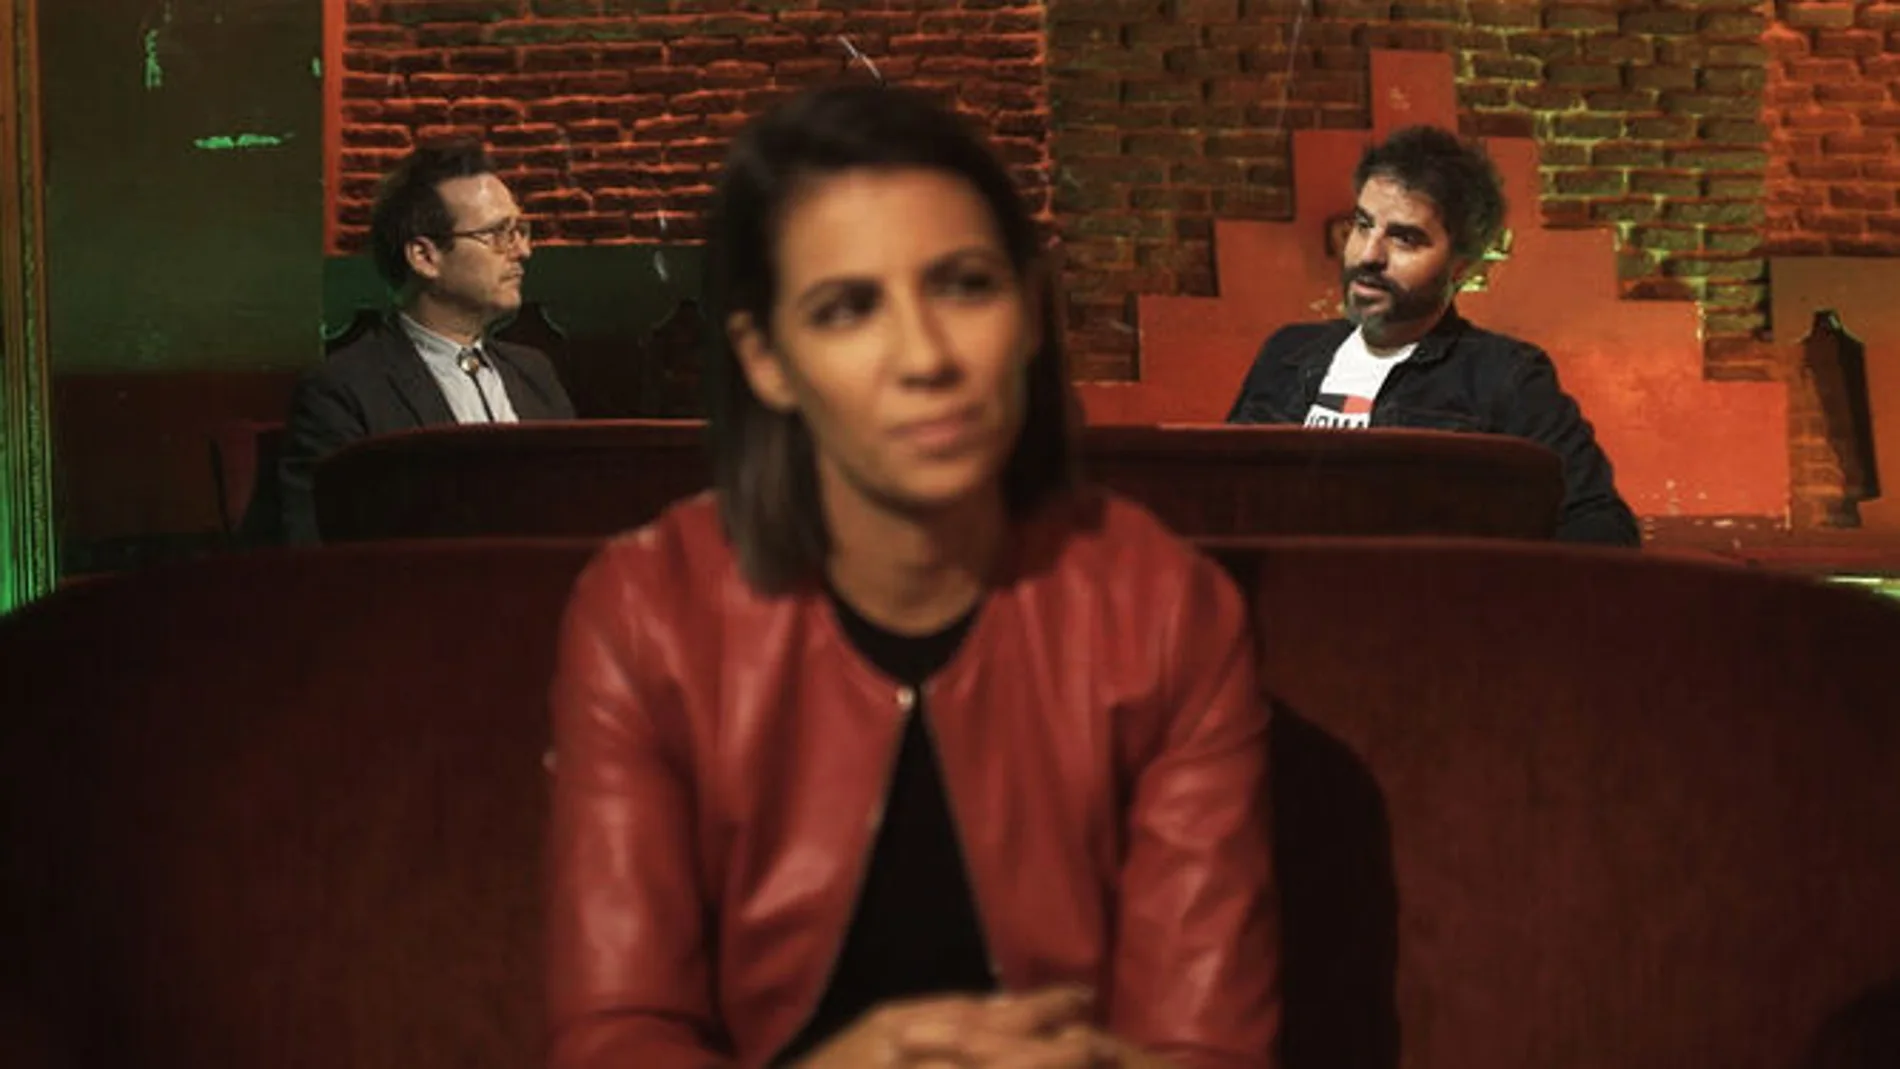 Ana Pastor entrevistó anoche a los humoristas Joaquín Reyes y Ernesto Sevilla en su programa "¿Dónde estabas entonces?"